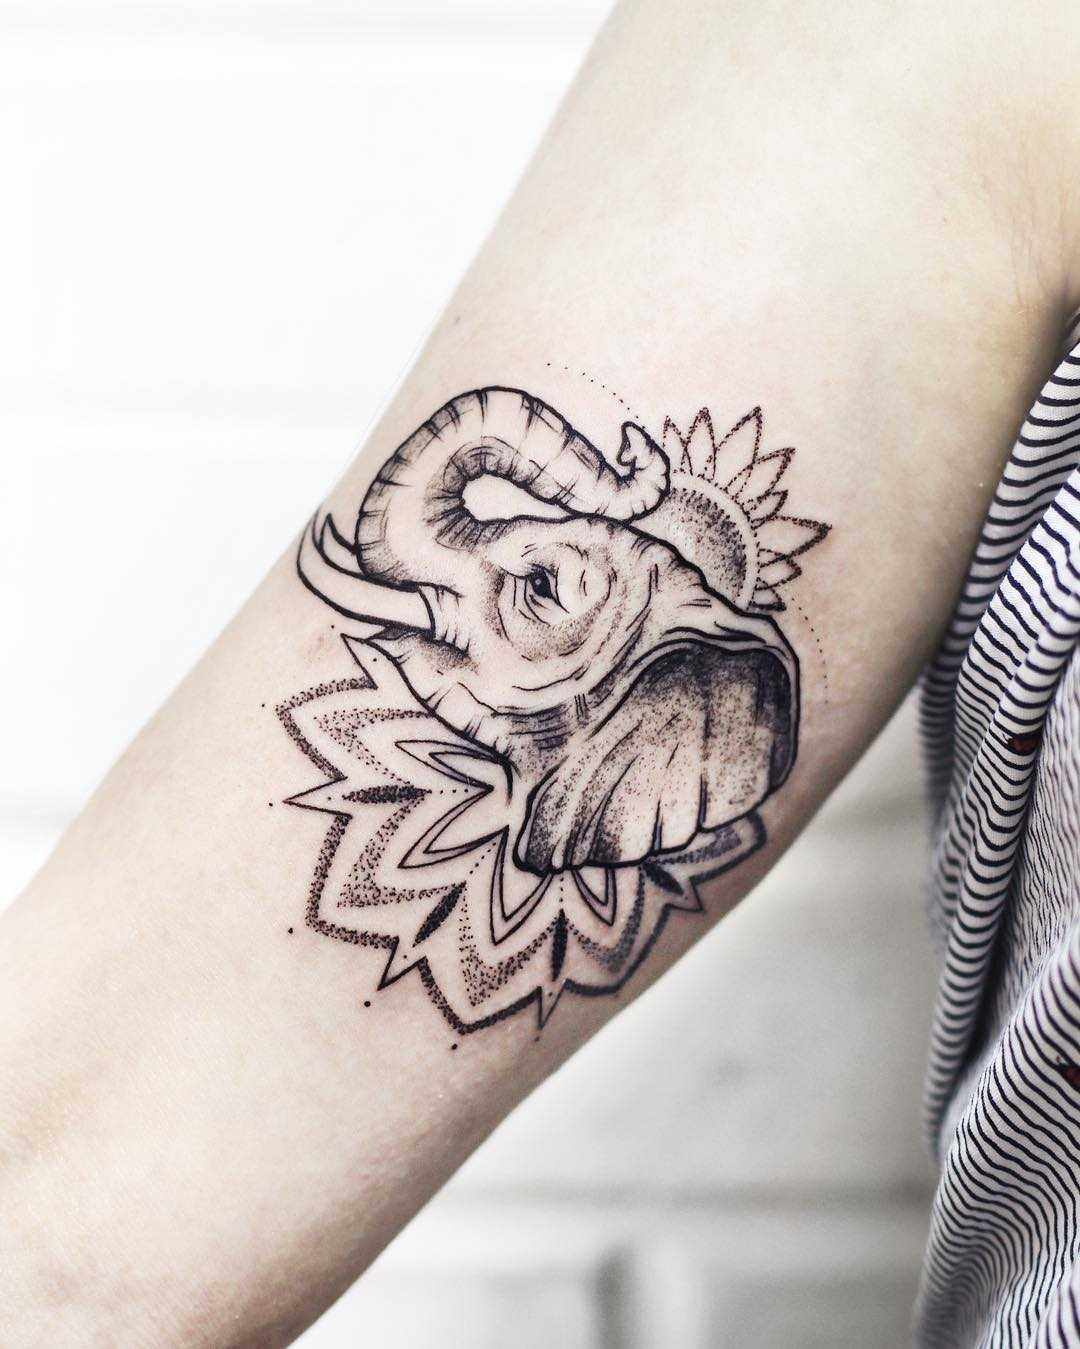 Tattoo tagged with: small, elephant, jin, micro, animal, tiny, ifttt,  little, wrist, minimalist | inked-app.com